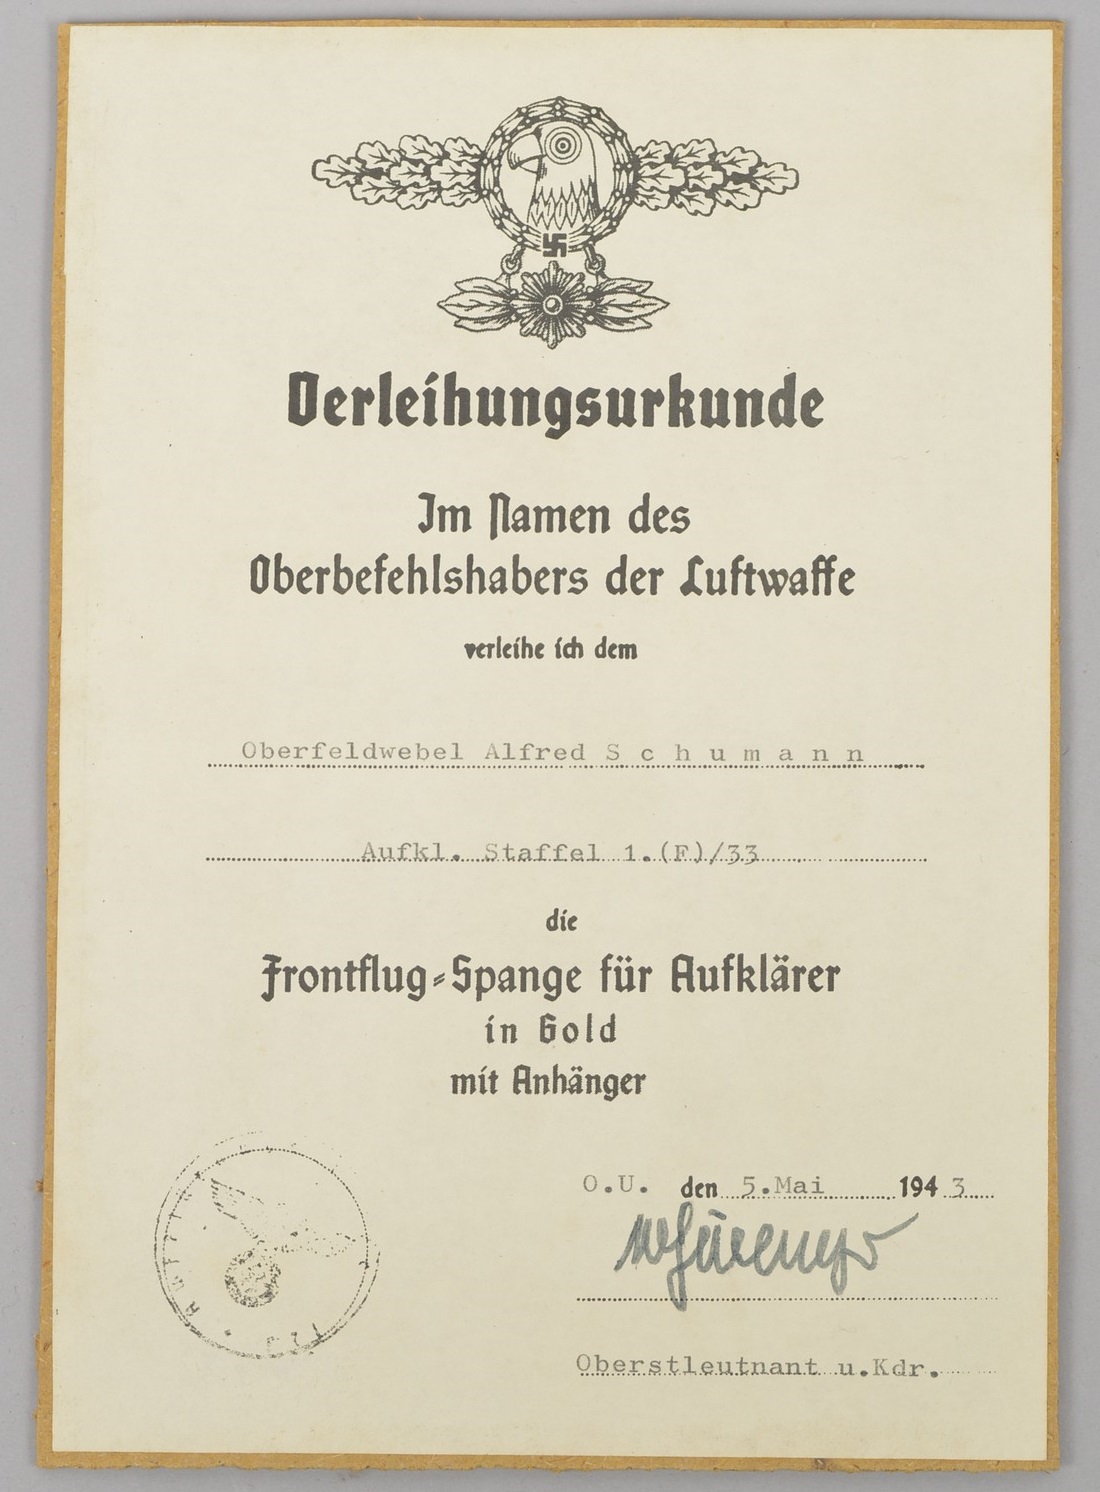 Document for the Frontflug-Spange für Aufklarer in Gold mit Anhä